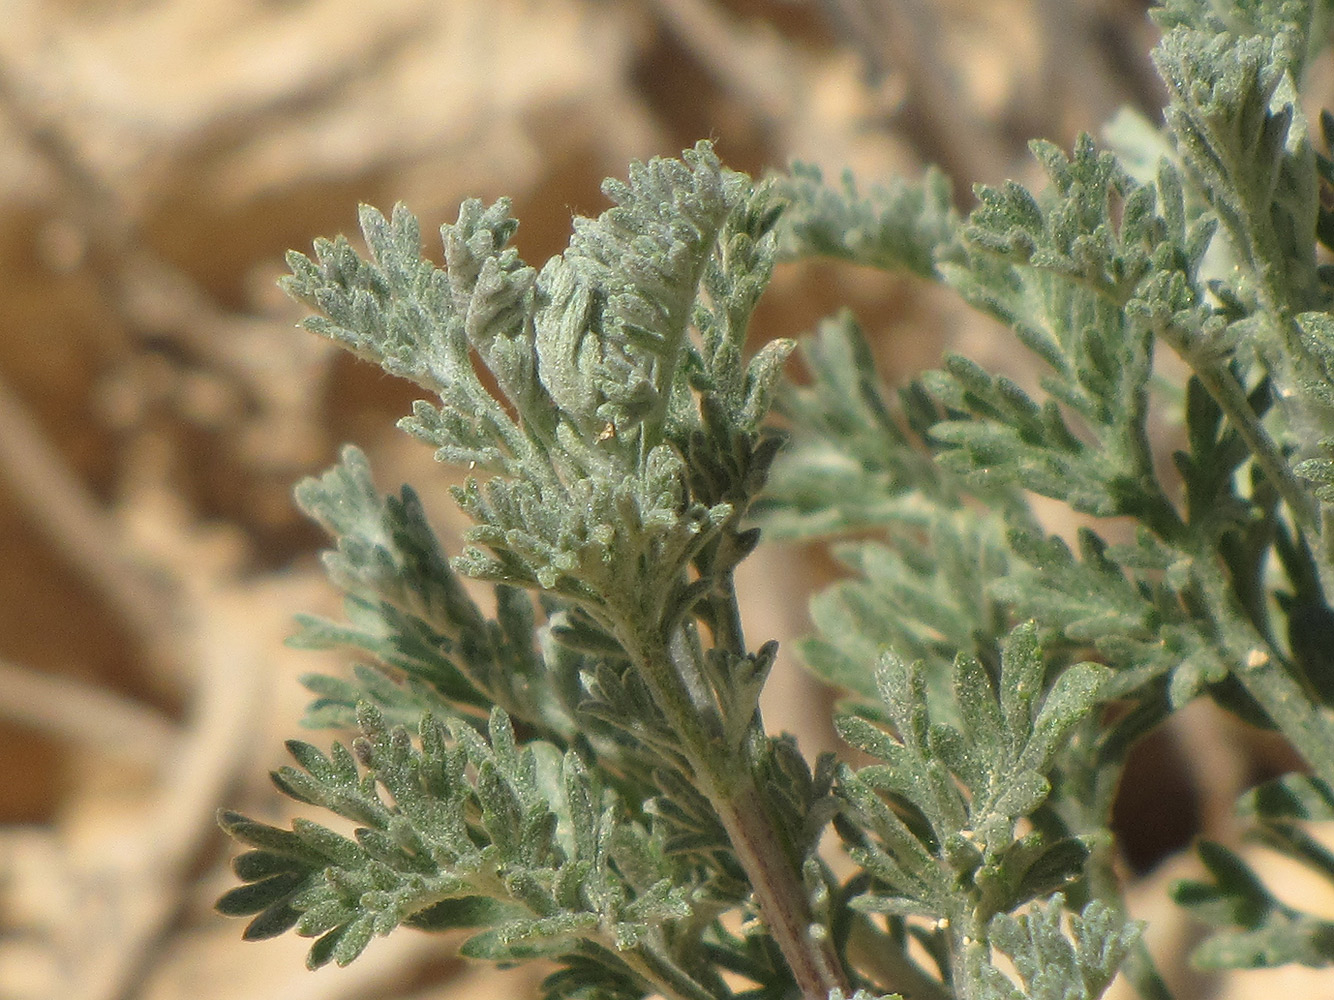 Image of Artemisia sieberi specimen.